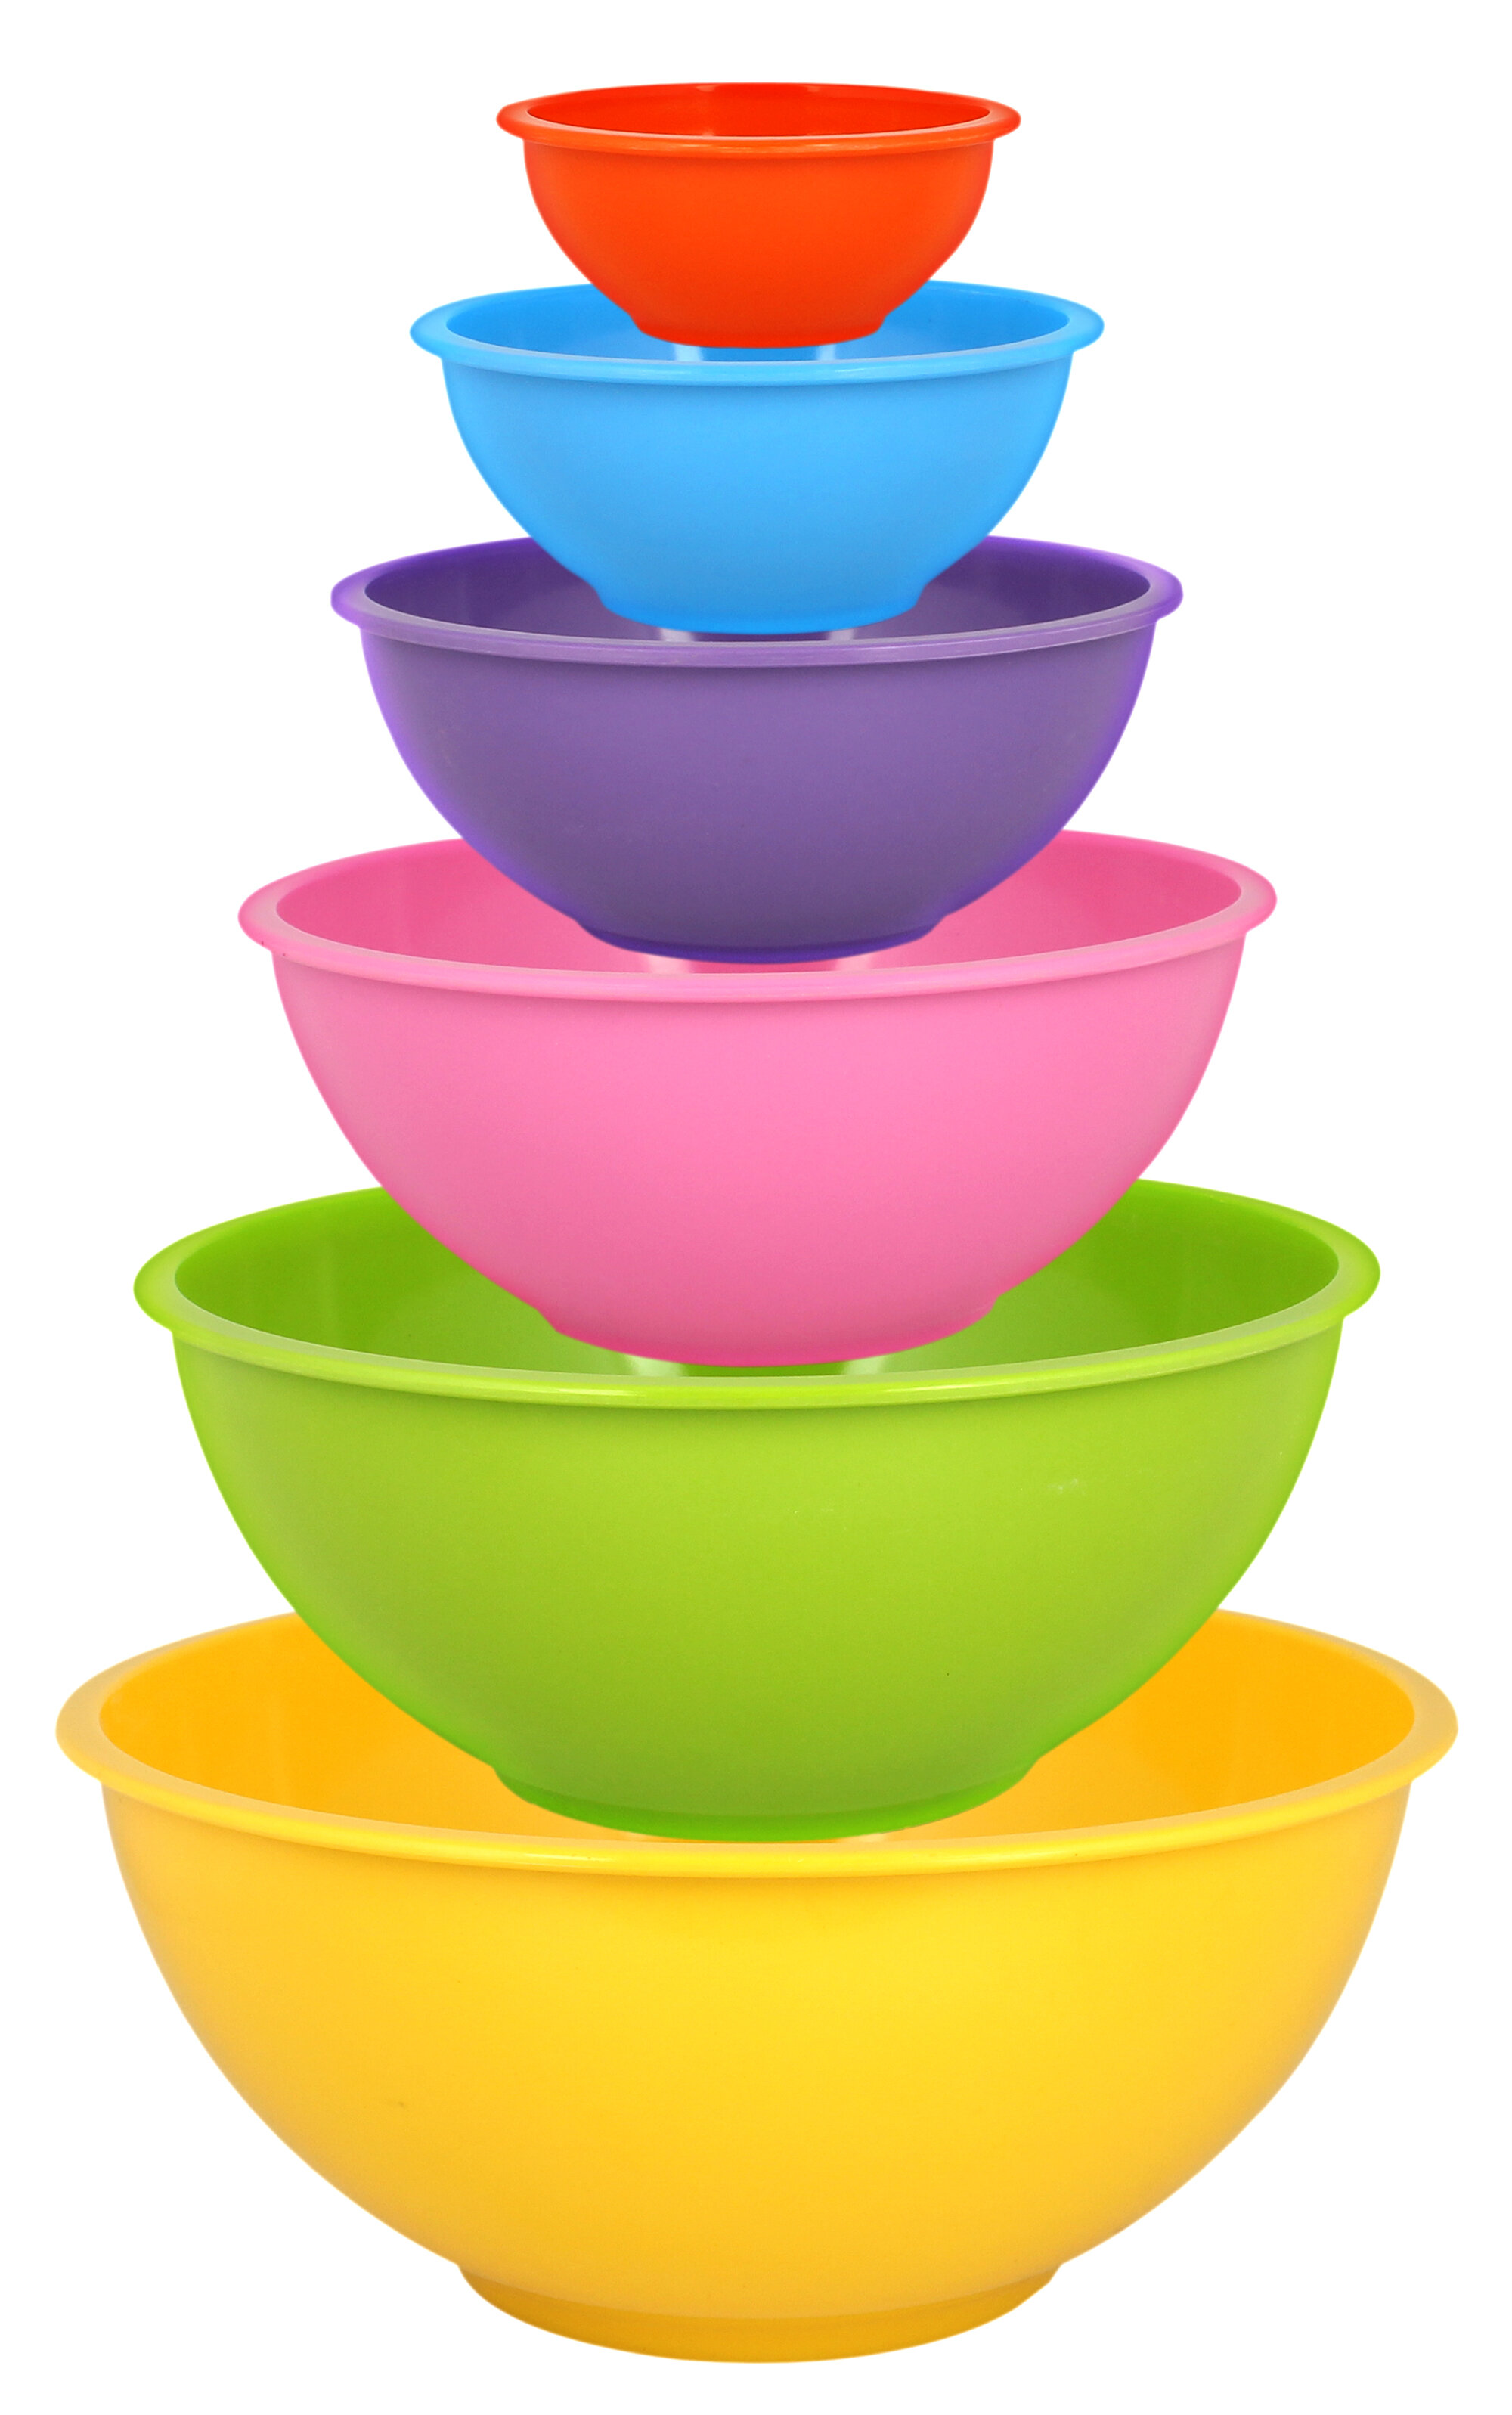 https://assets.wfcdn.com/im/21974894/compr-r85/1026/102641376/melamine-nested-mixing-bowl-set.jpg